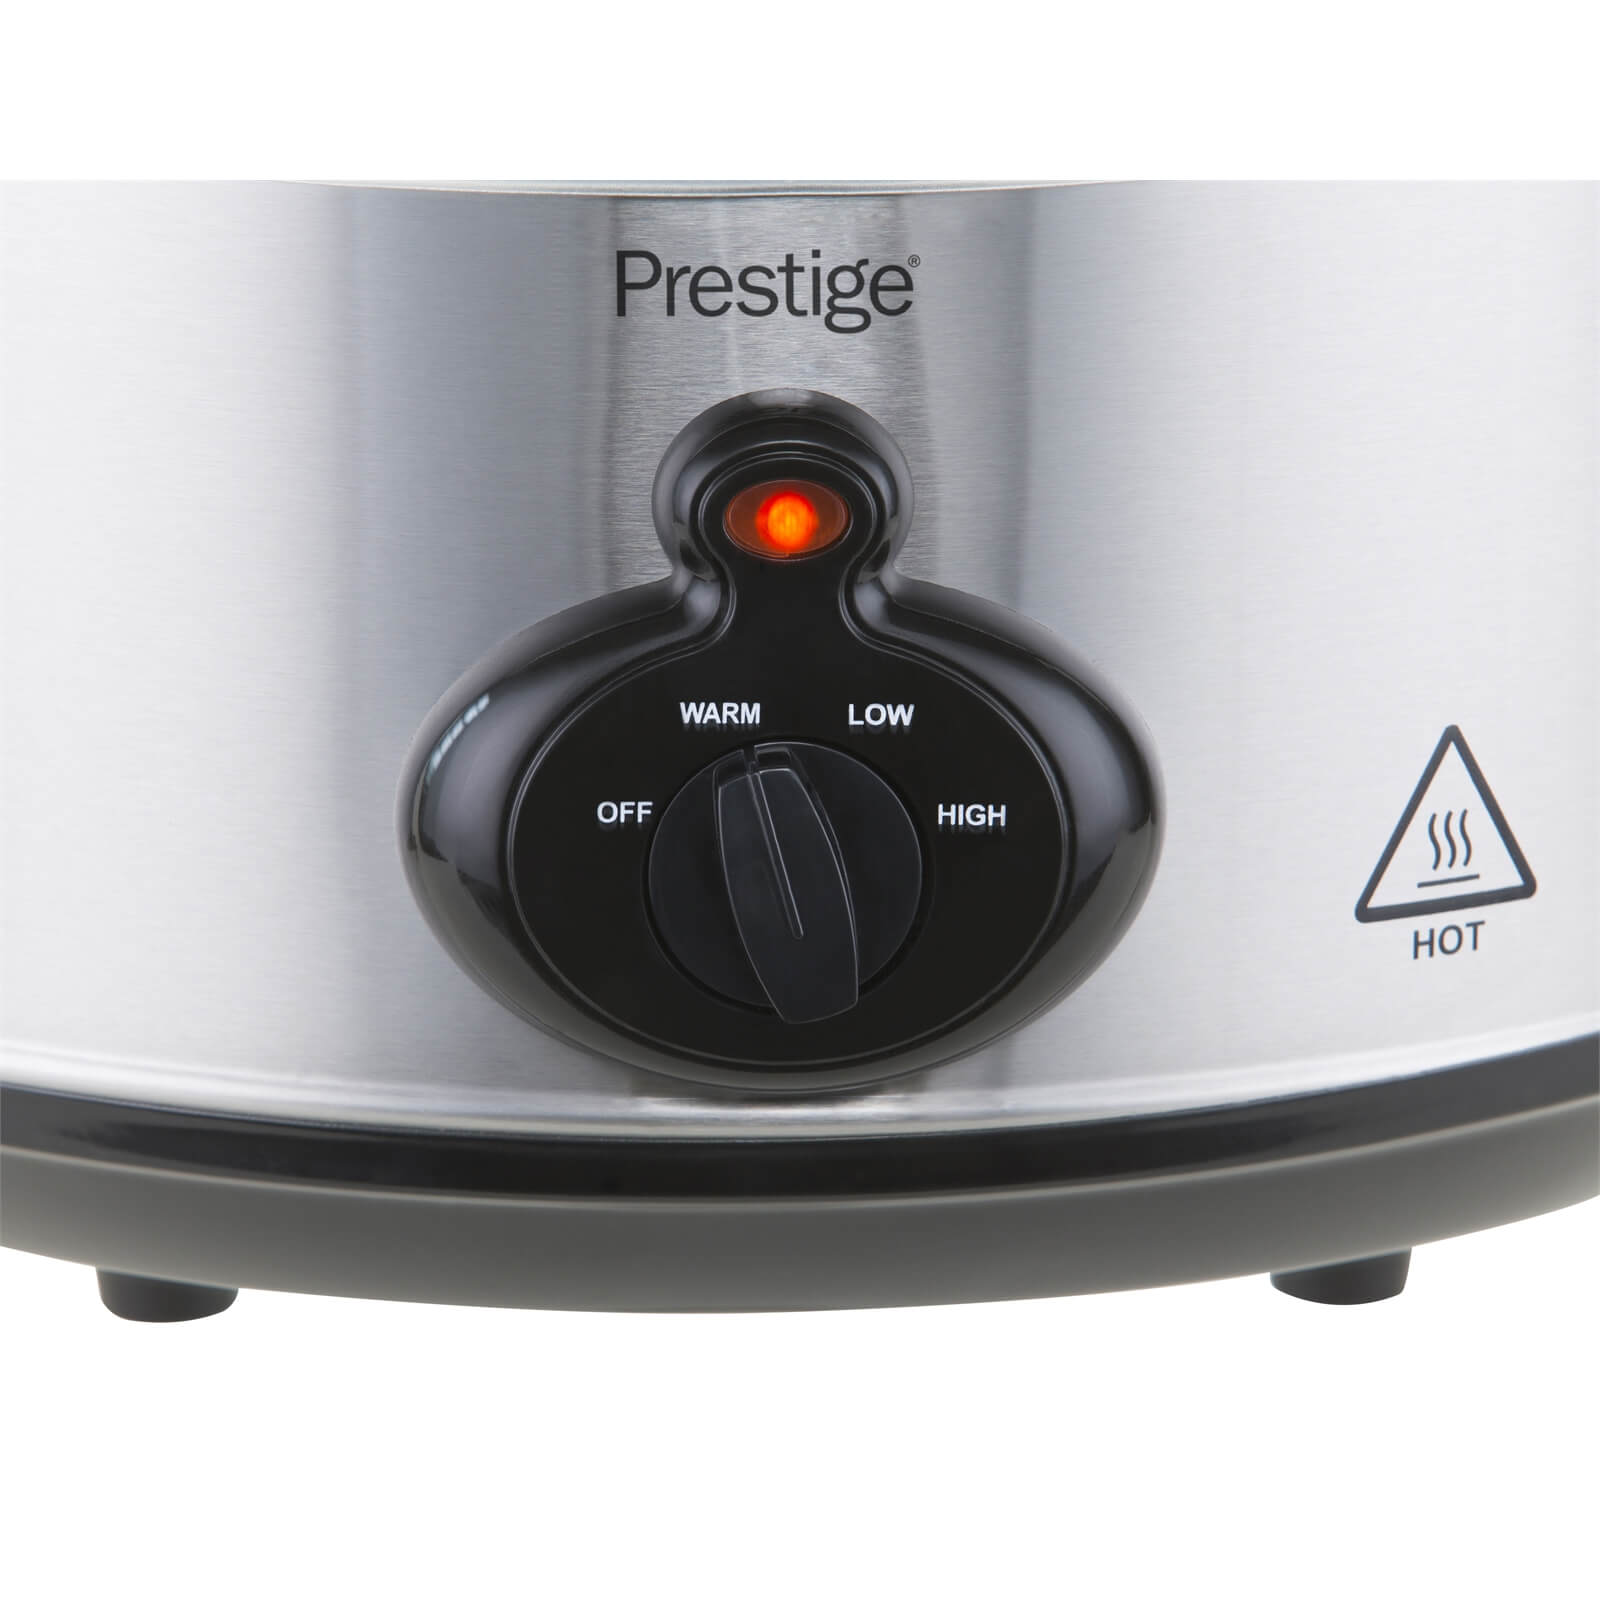 Prestige 5.6 Litre Mechanical Slow Cooker